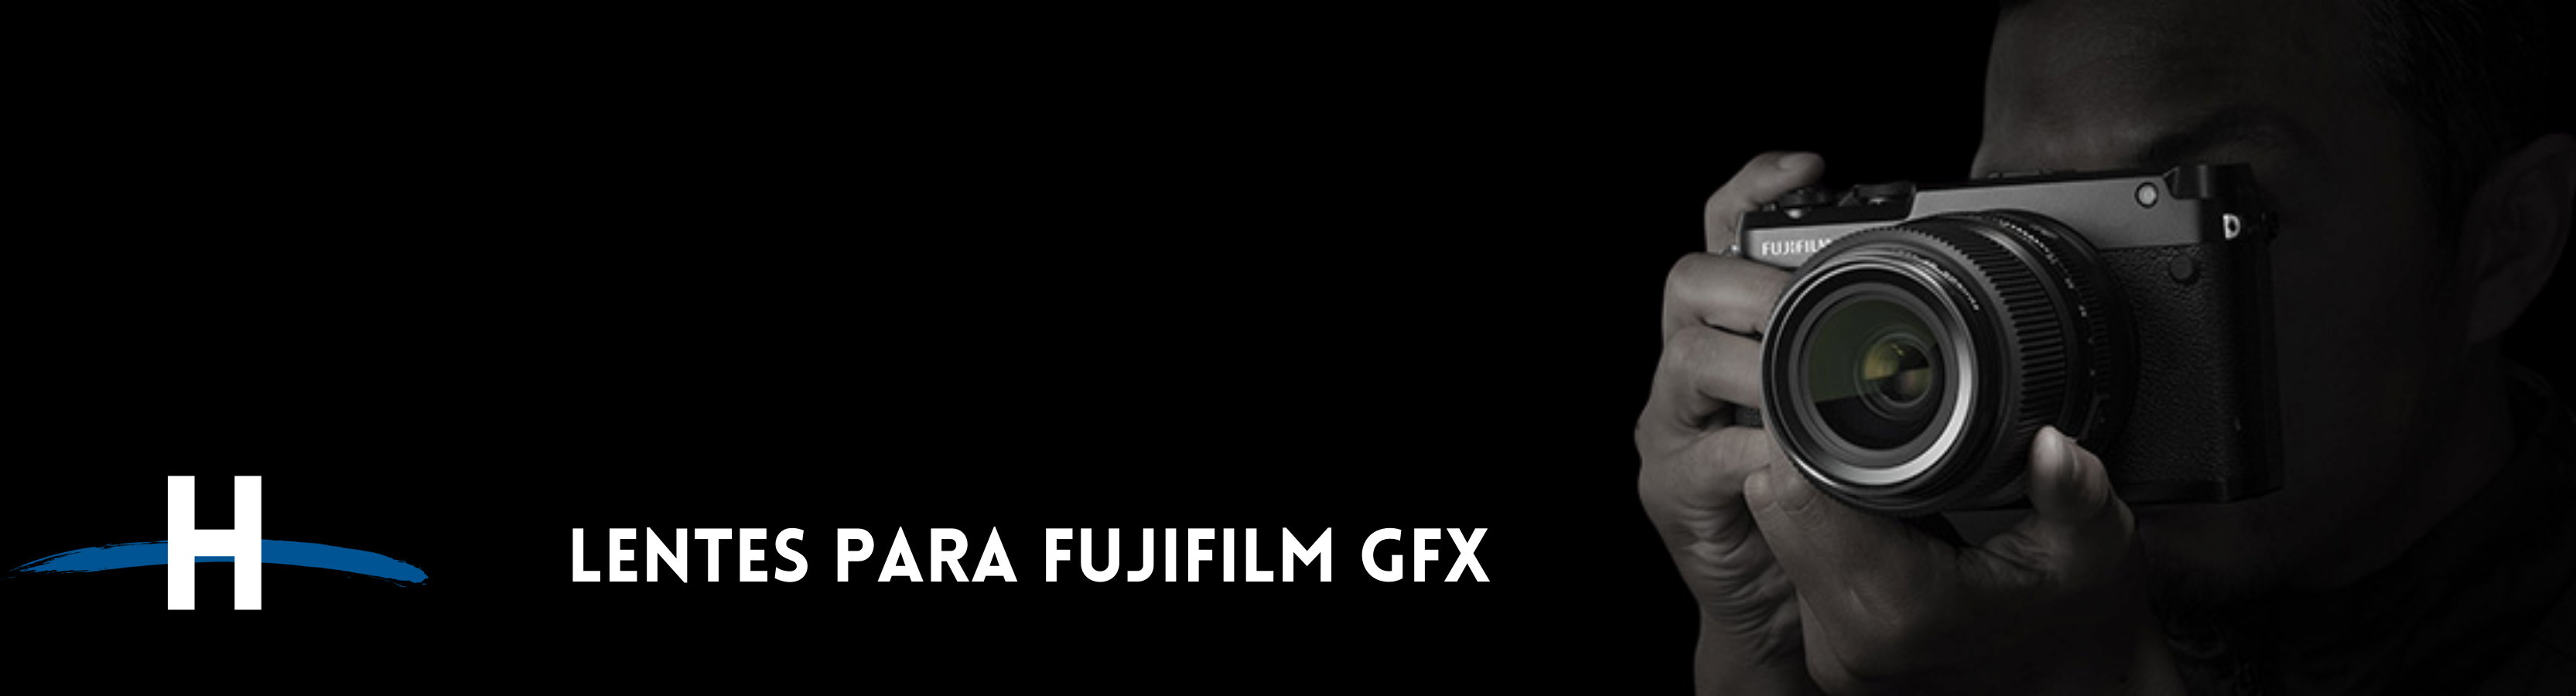 Lentes Fujifilm GFX